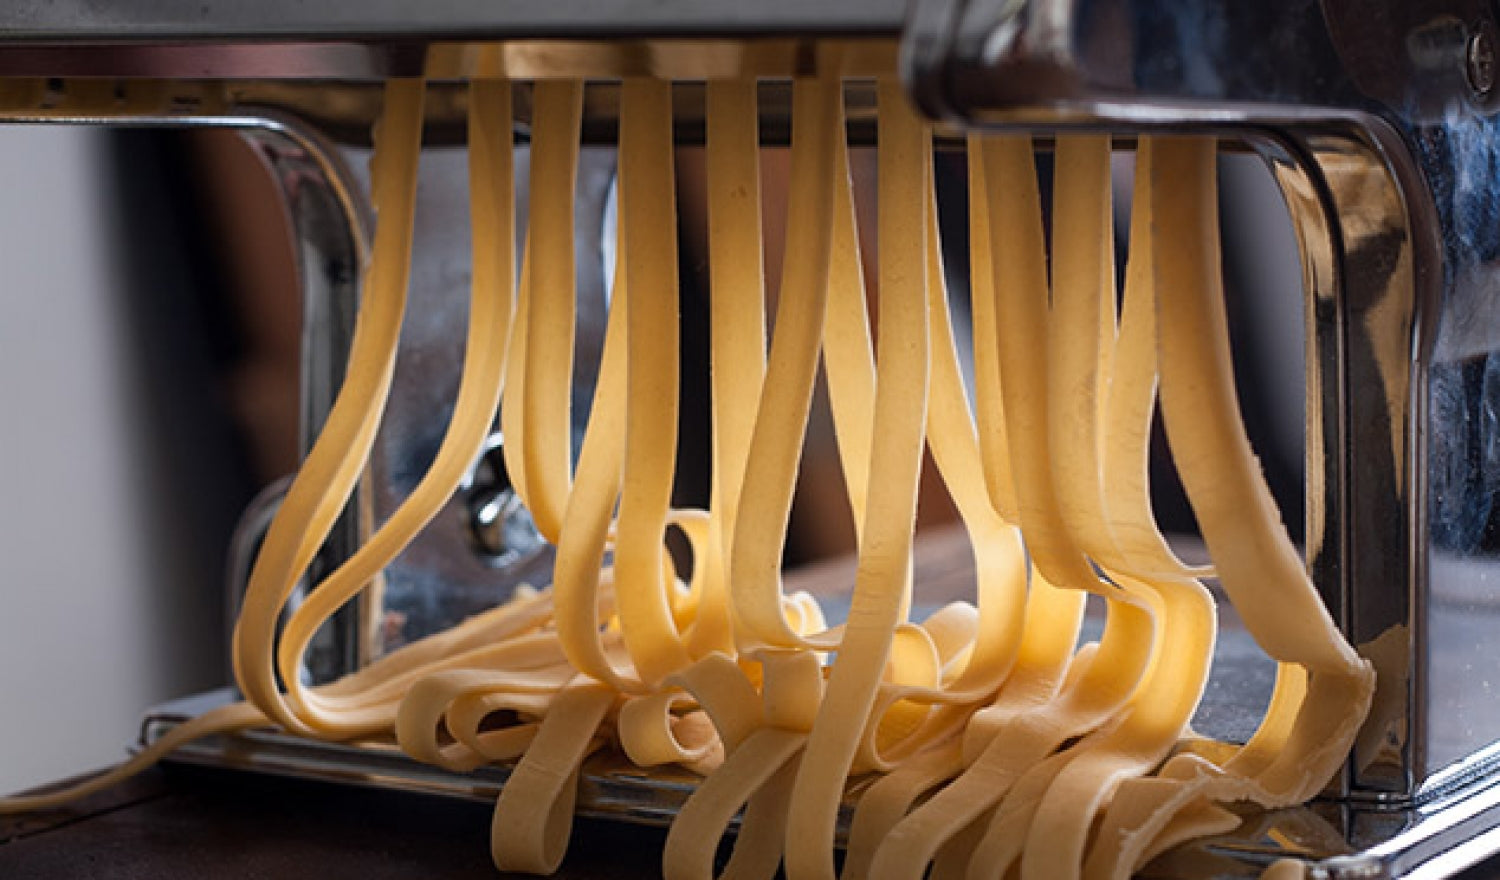 Professional pasta equipments